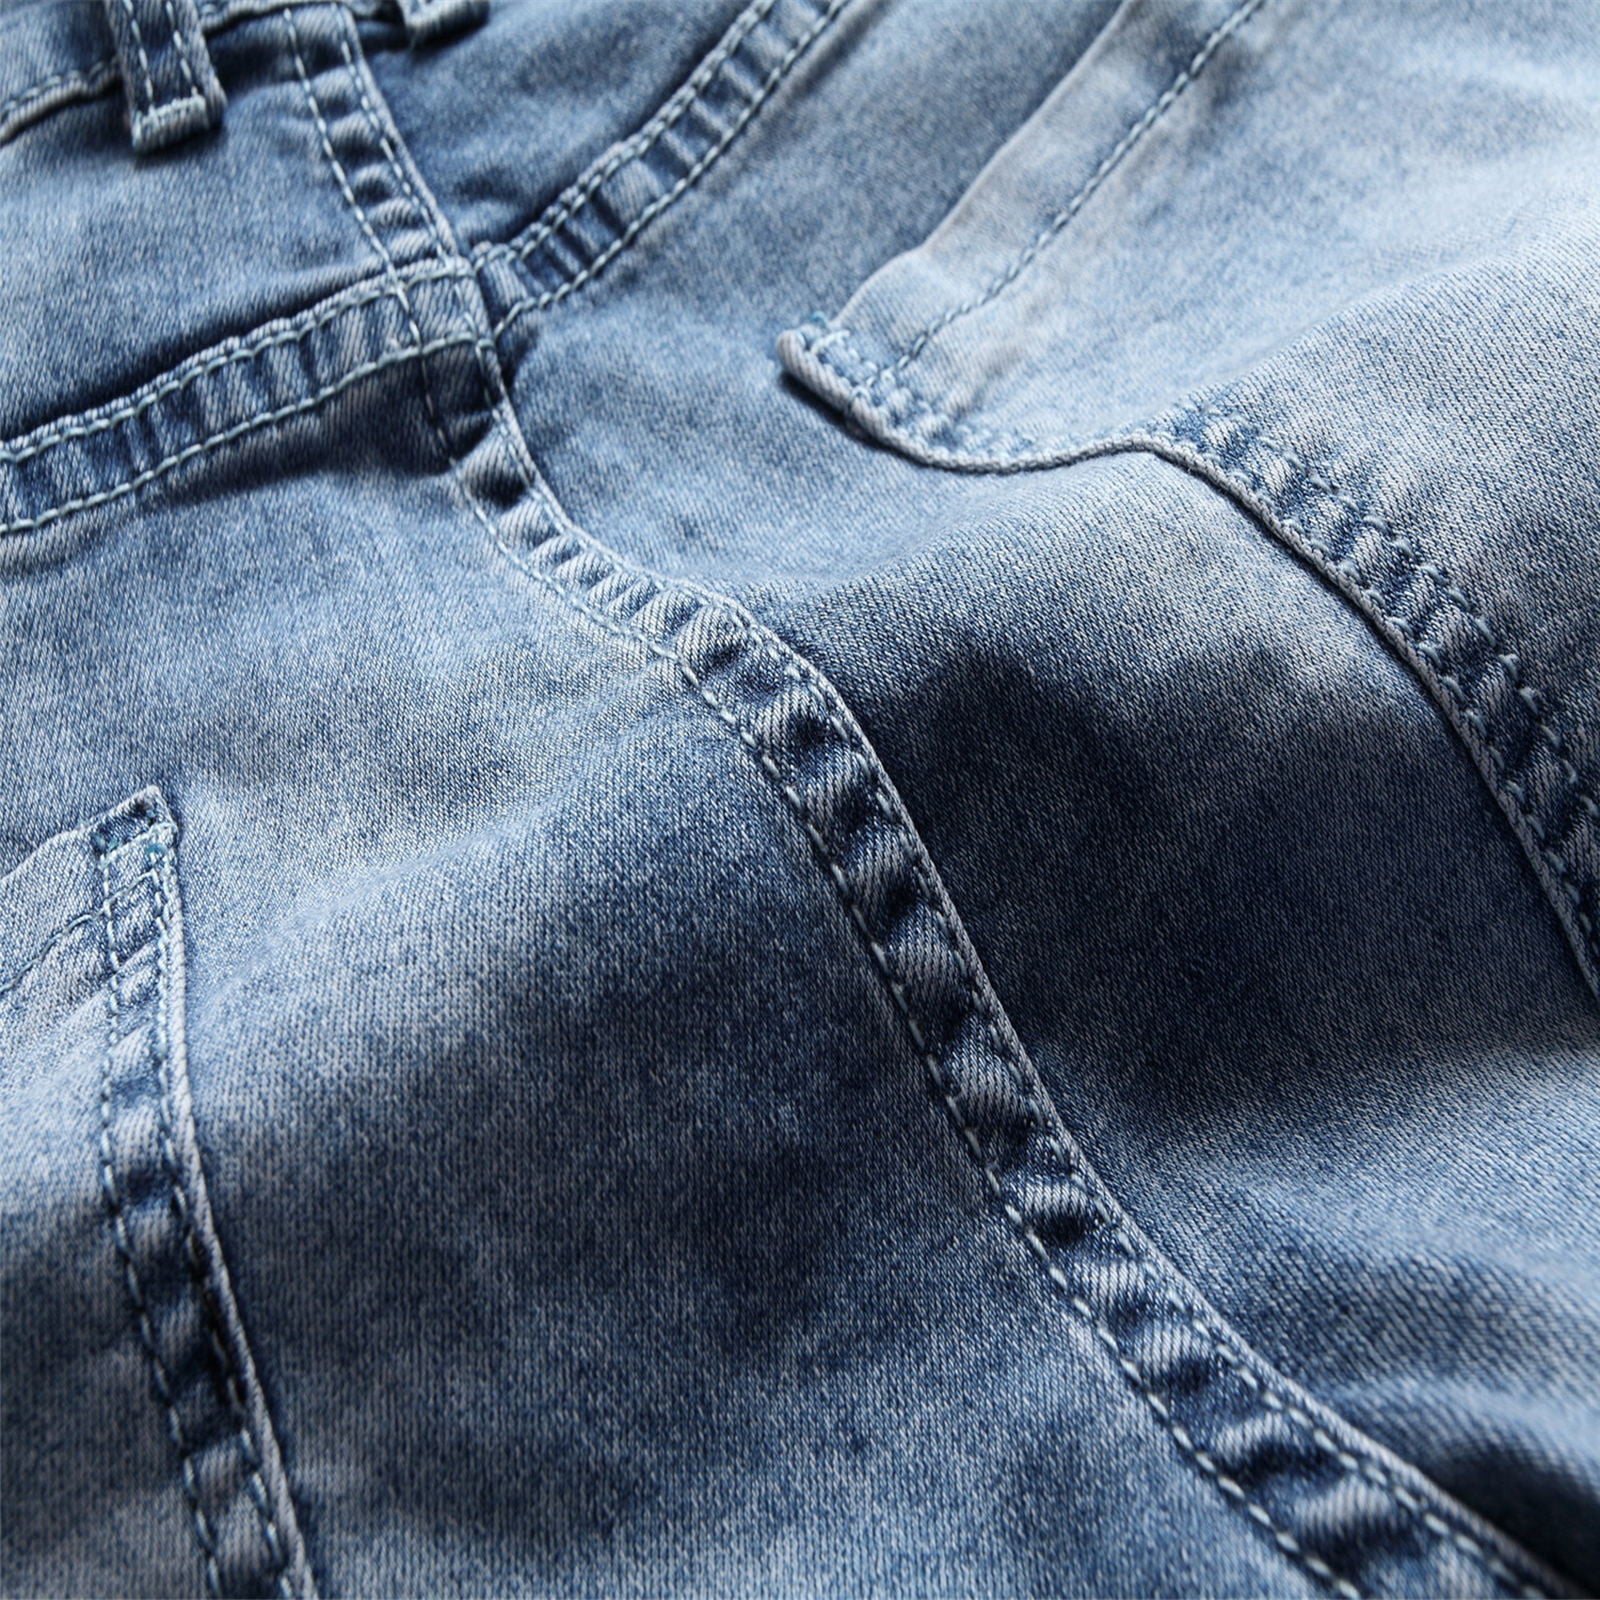 Revival, Slim Jeans Men\'s Jeans Biker Rock Jeans Stretch Biker Ripped Pants Distressed Comfy Fit, Men Designer for